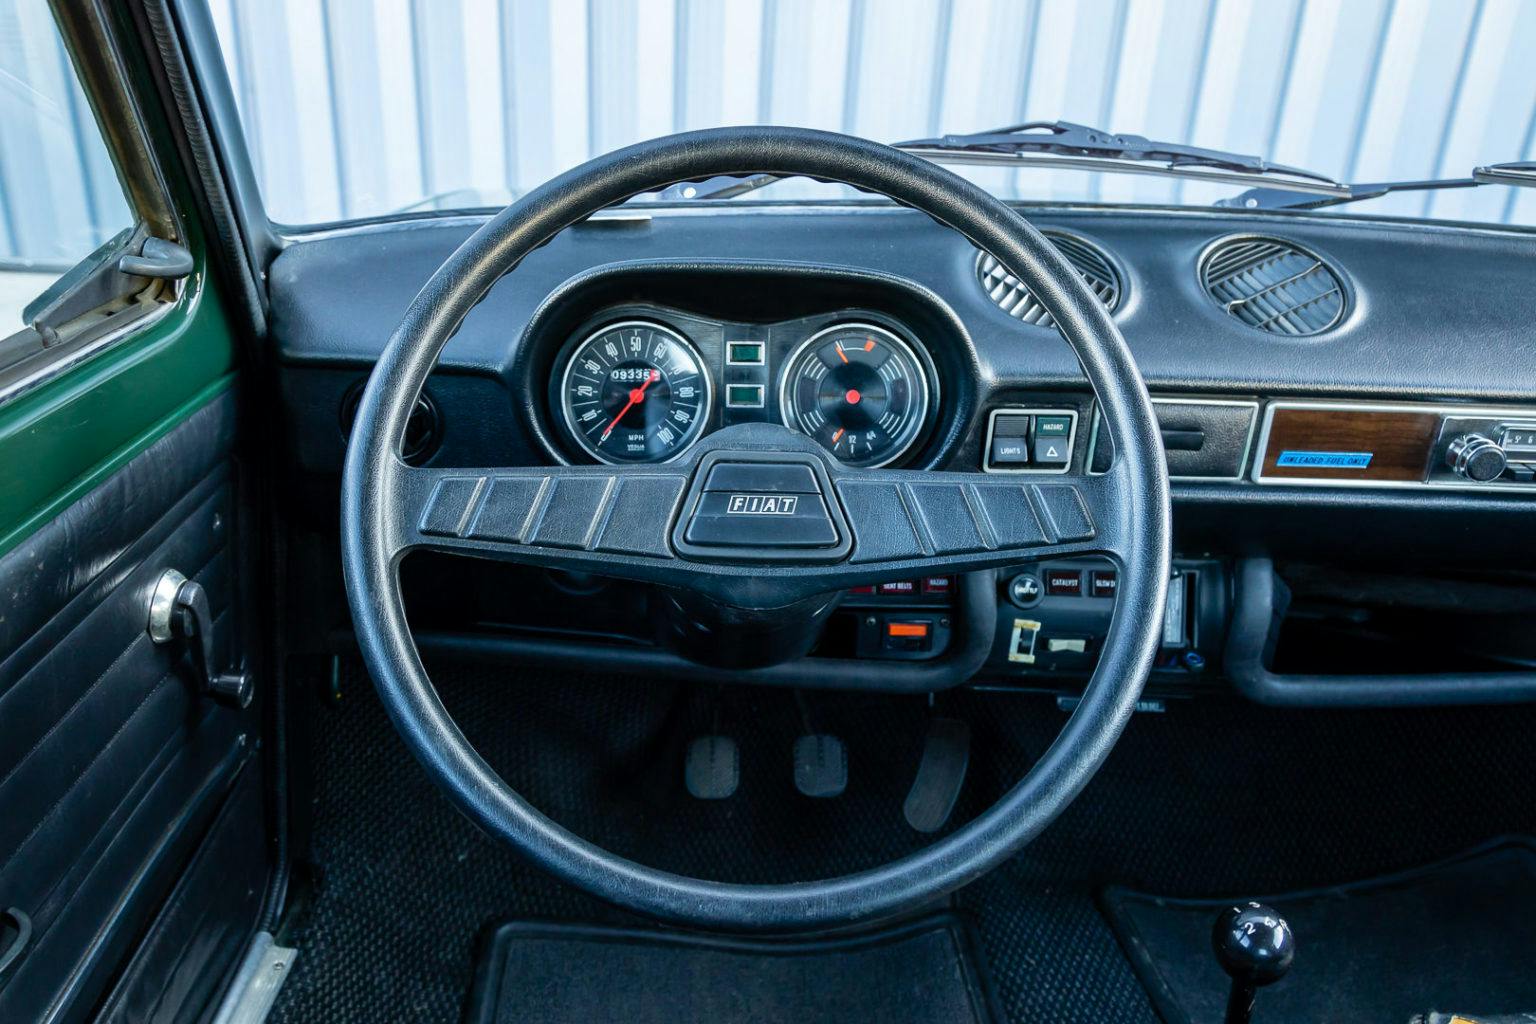 Tom Hanks' Fiat 128 interior